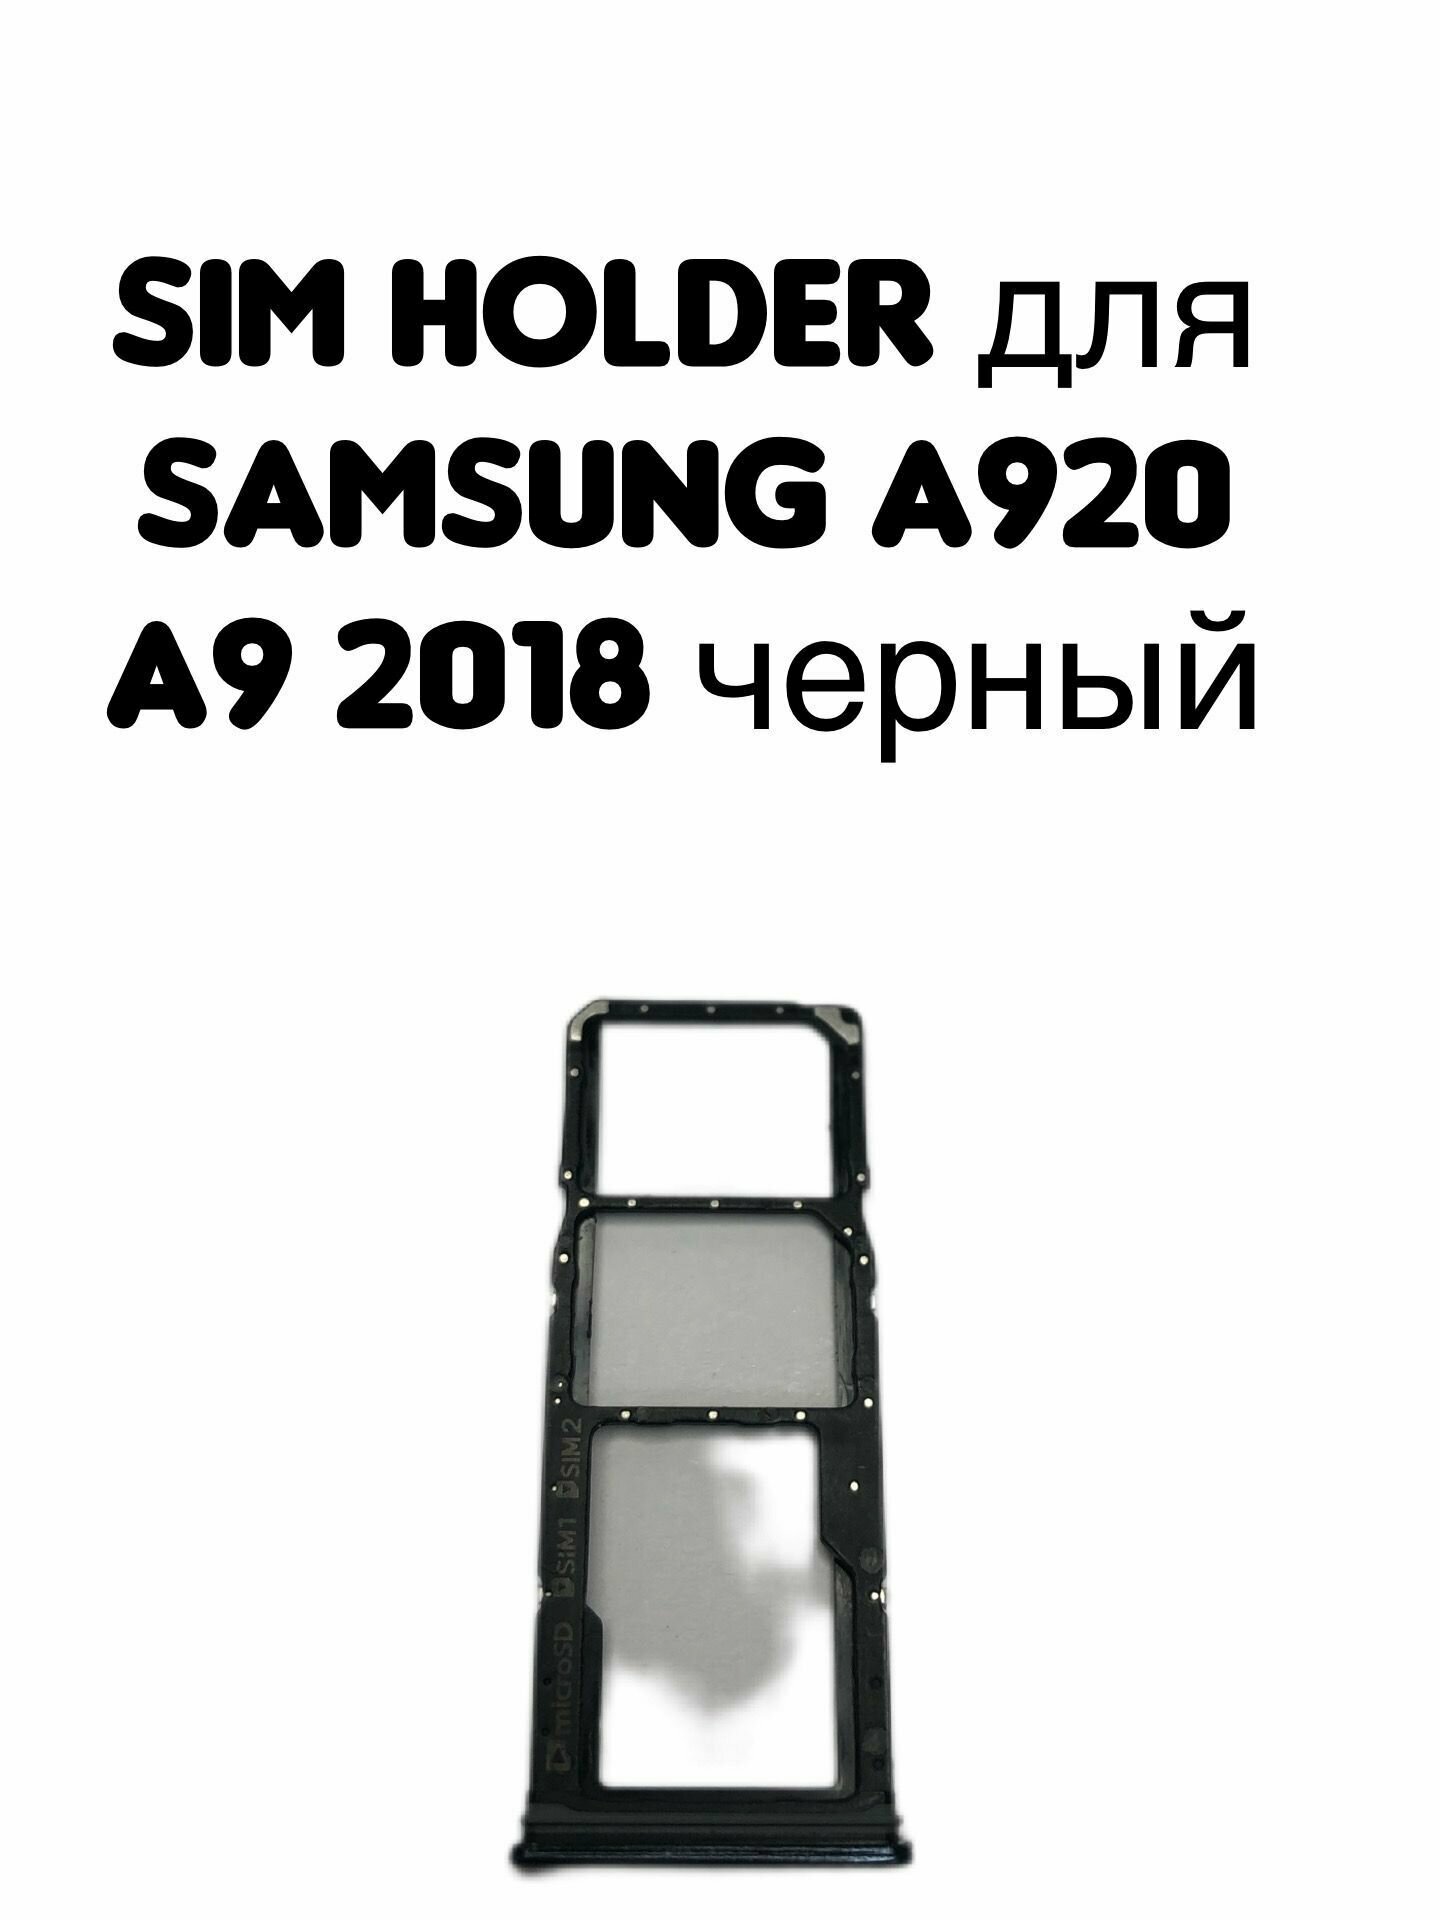 Держатель sim для Samsung A920 (A9 2018) черный card holder адаптер переходник лоток слот для SIM-карты